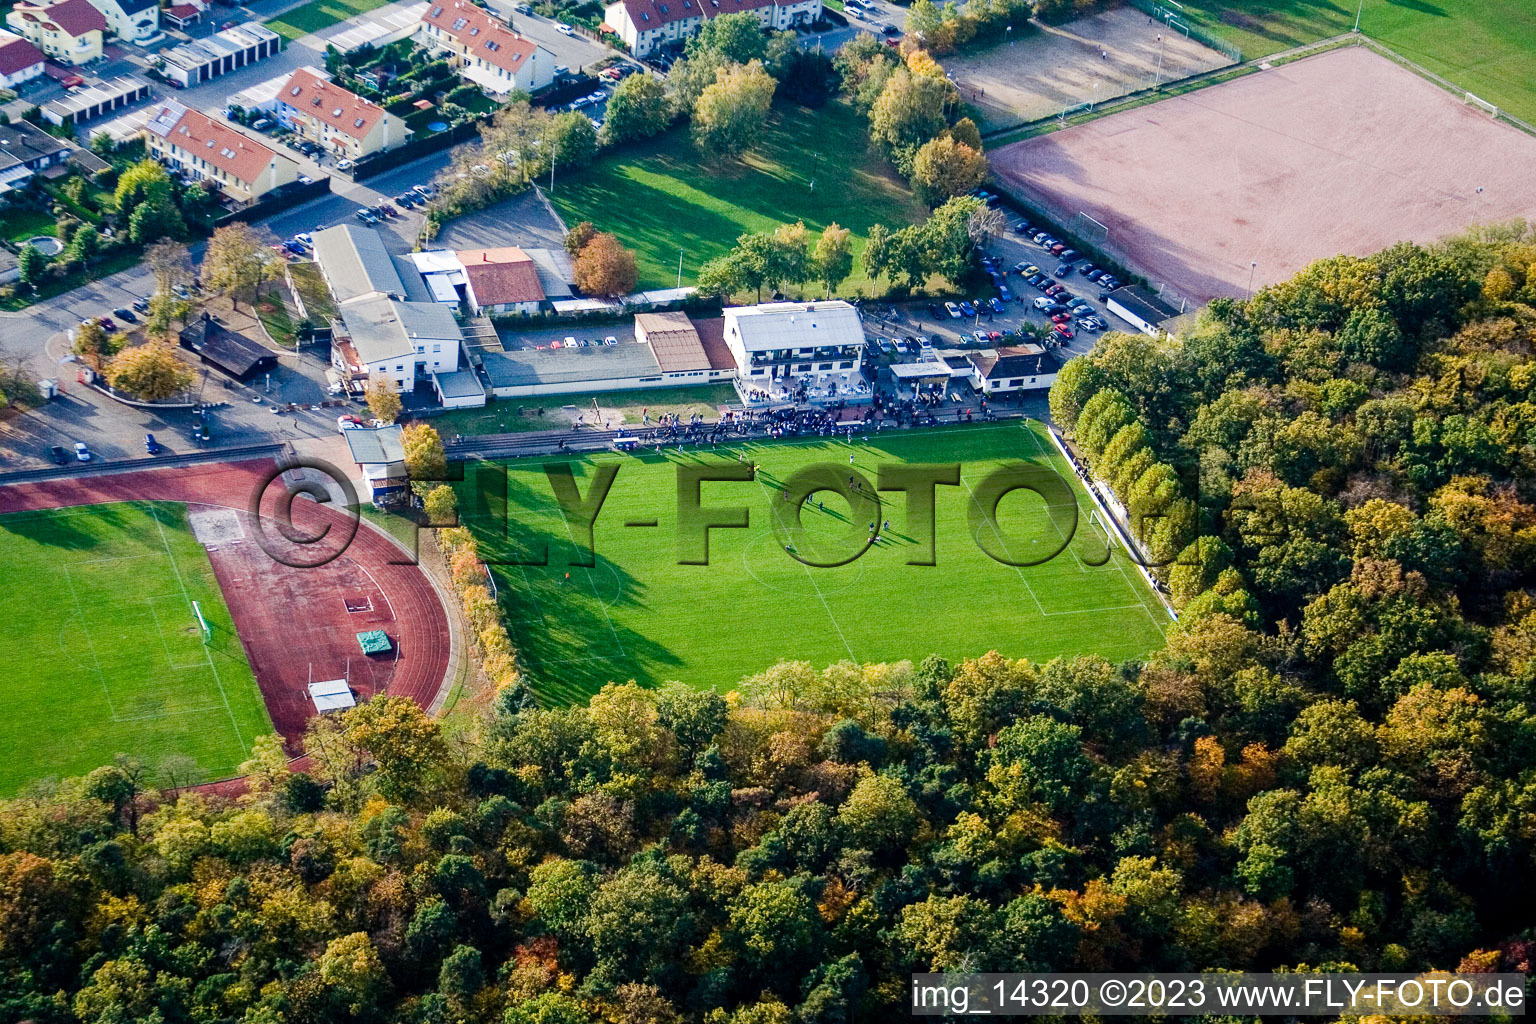 Ketsch im Bundesland Baden-Württemberg, Deutschland von der Drohne aus gesehen